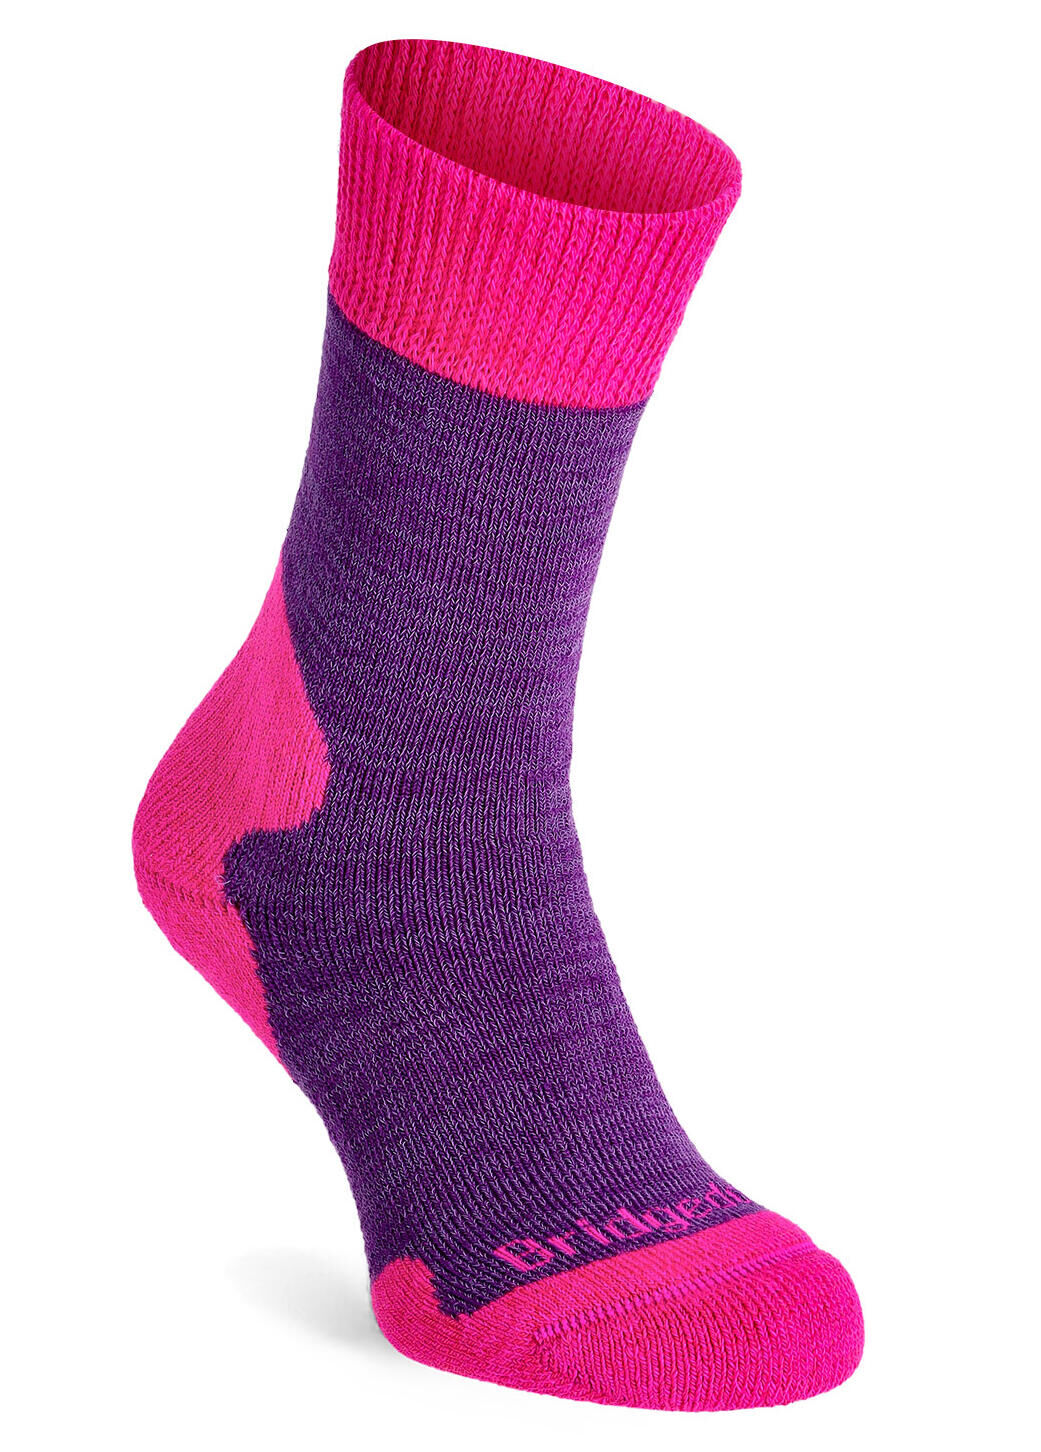 BRIDGEDALE Womens Explorer Heavyweight Merino Wool Cushioned Boot Socks